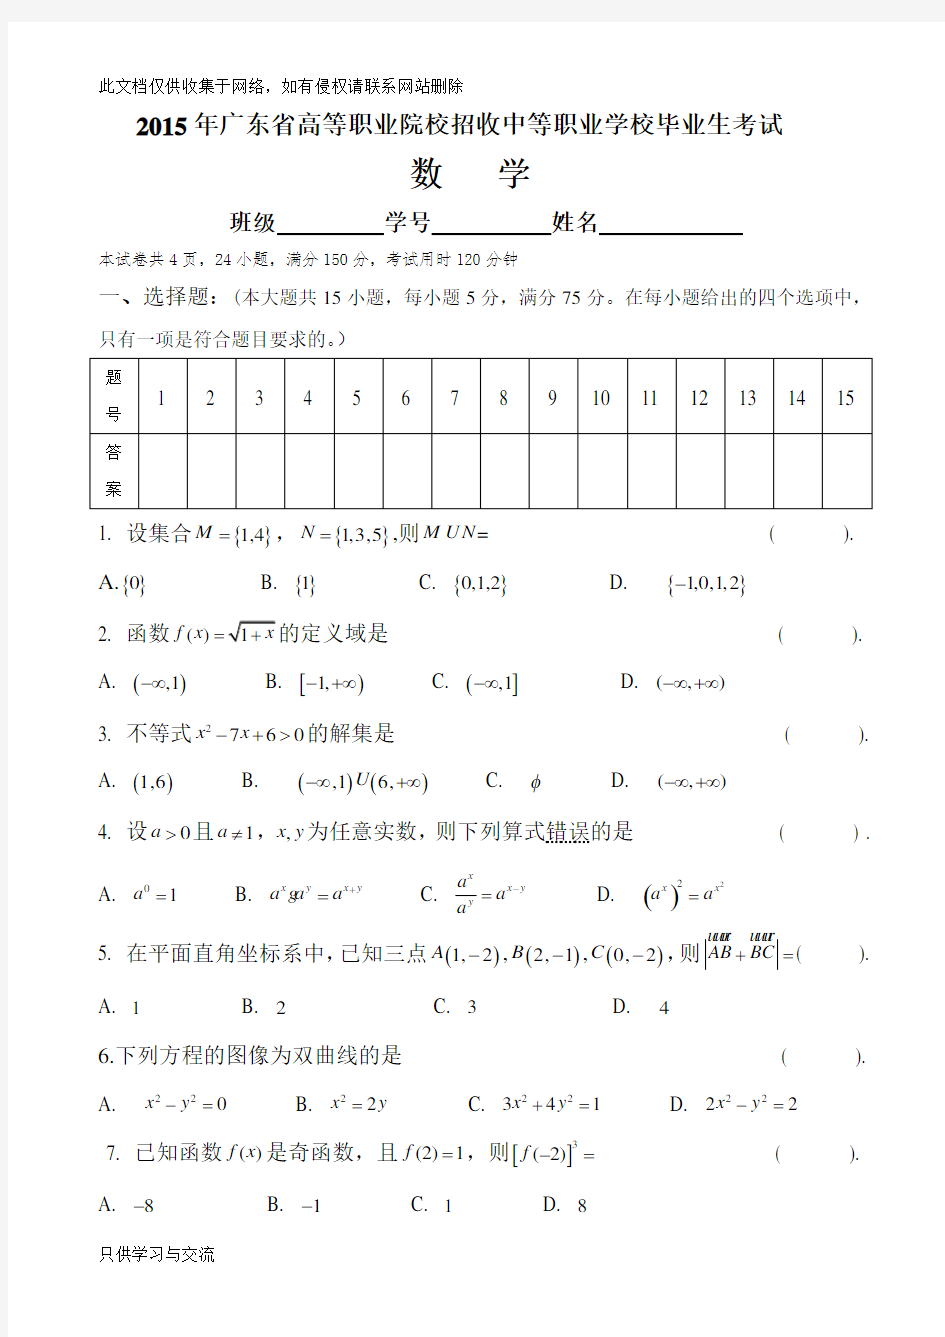 广东省3+证书高职高考数学试卷(真题)和答案学习资料